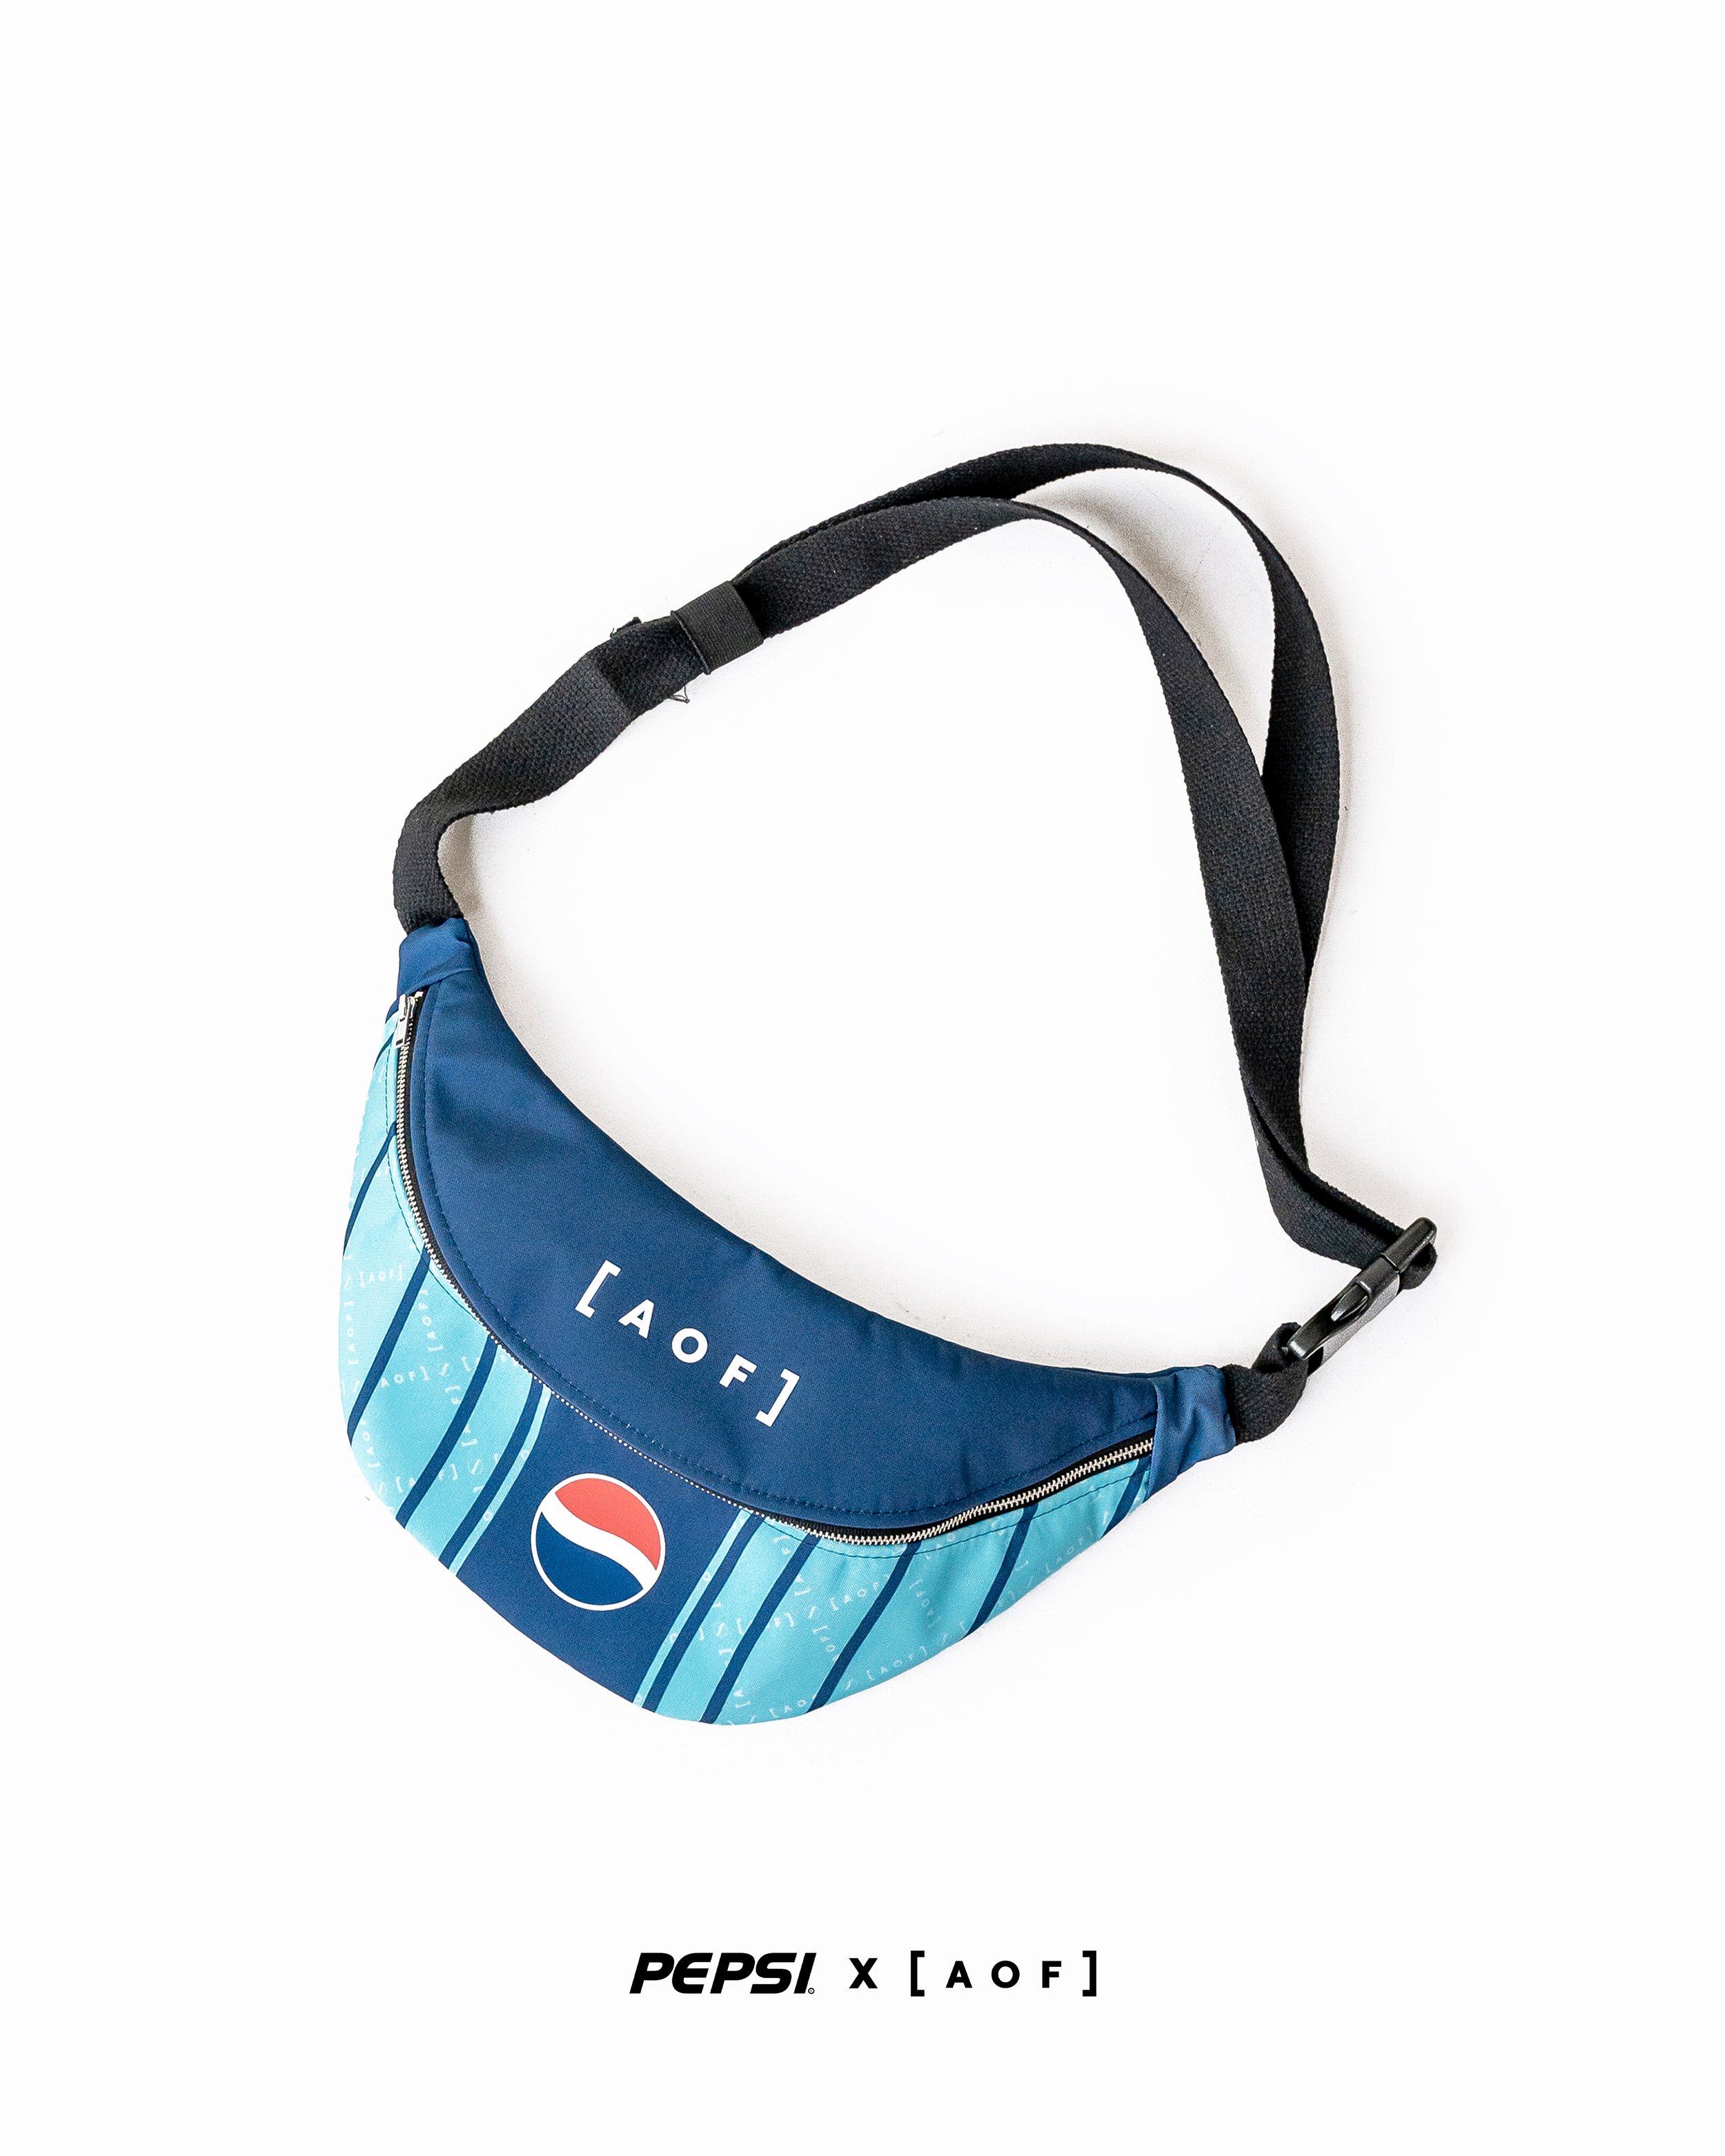 Pepsi X AOF_ Shoulder Bag_£25.00_www.art-of-football.com.jpg